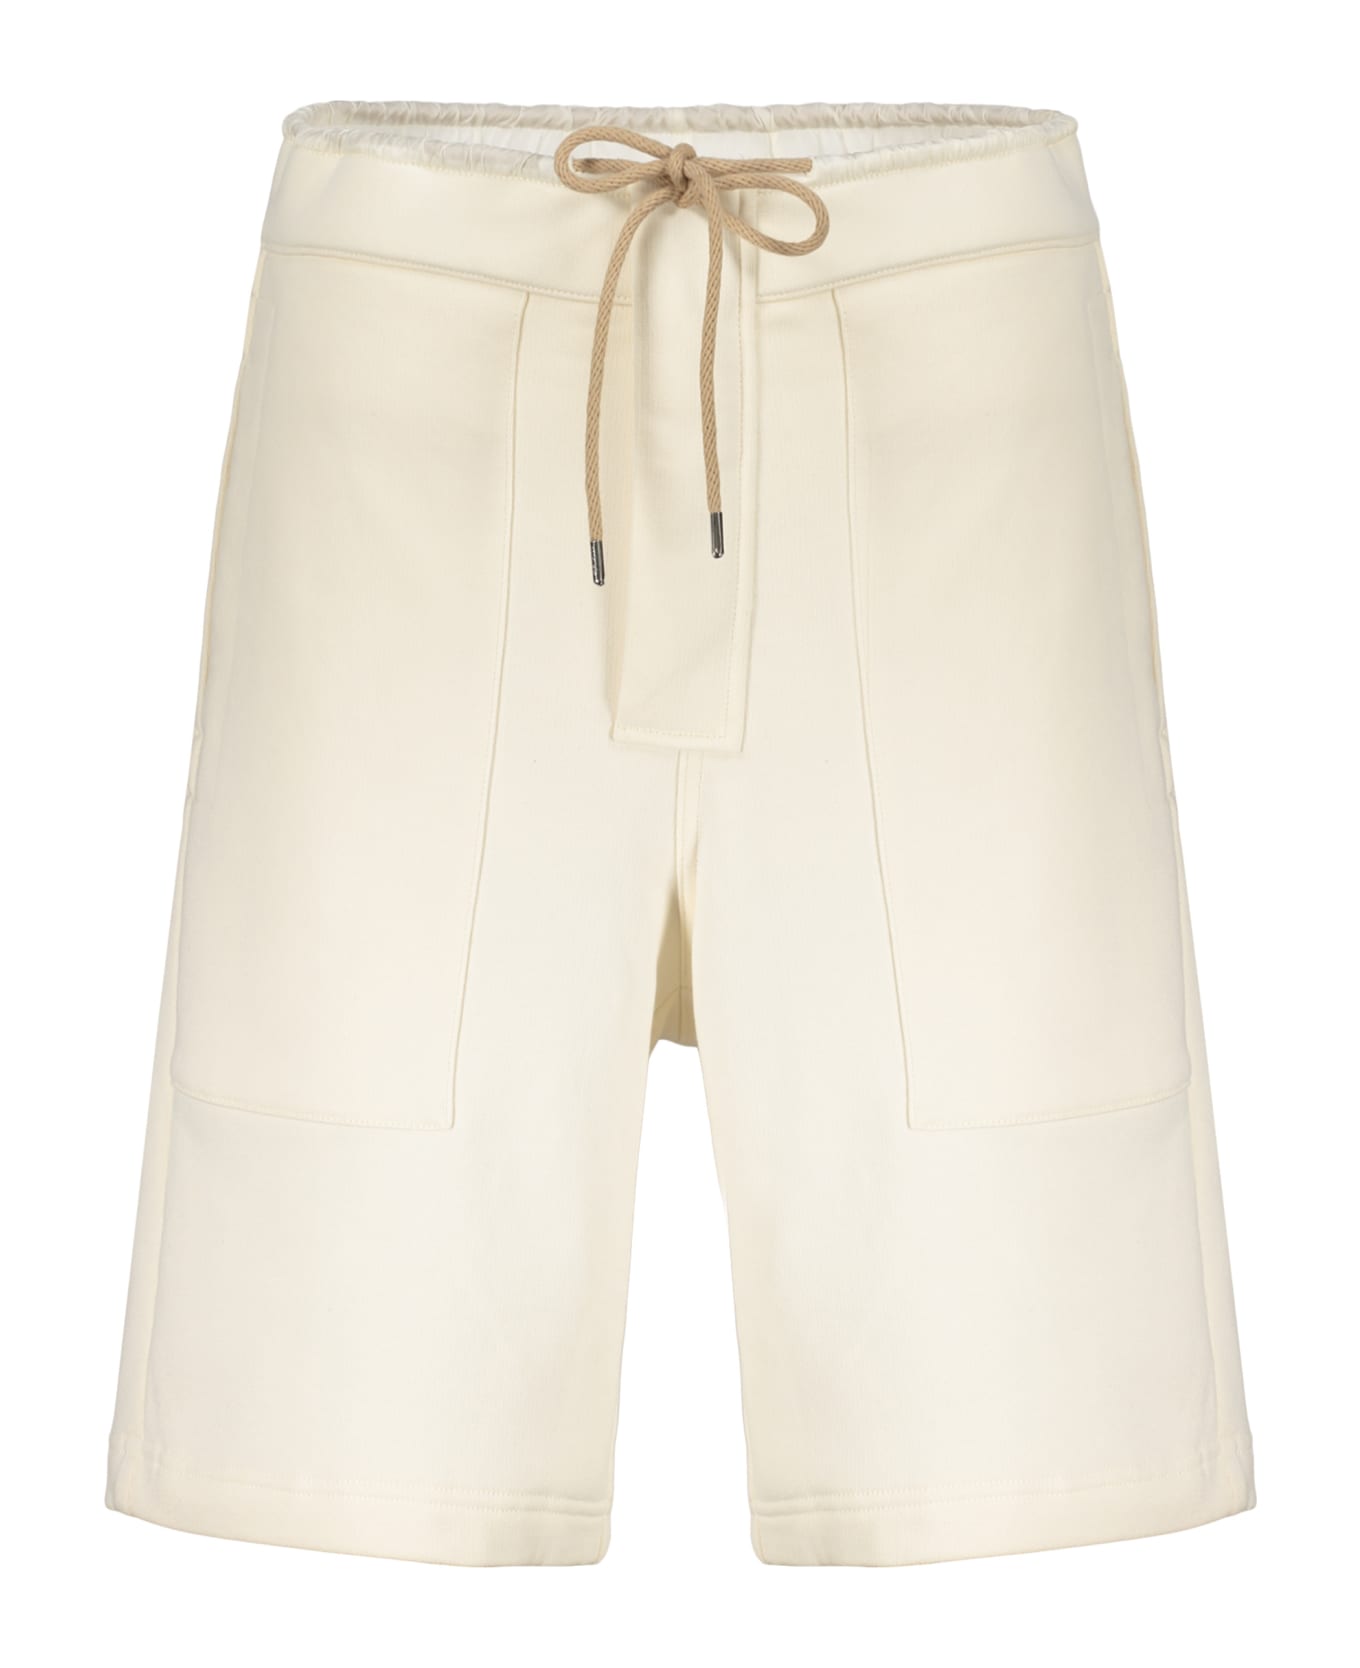 AMBUSH Cotton Bermuda Shorts - Ecru ショートパンツ